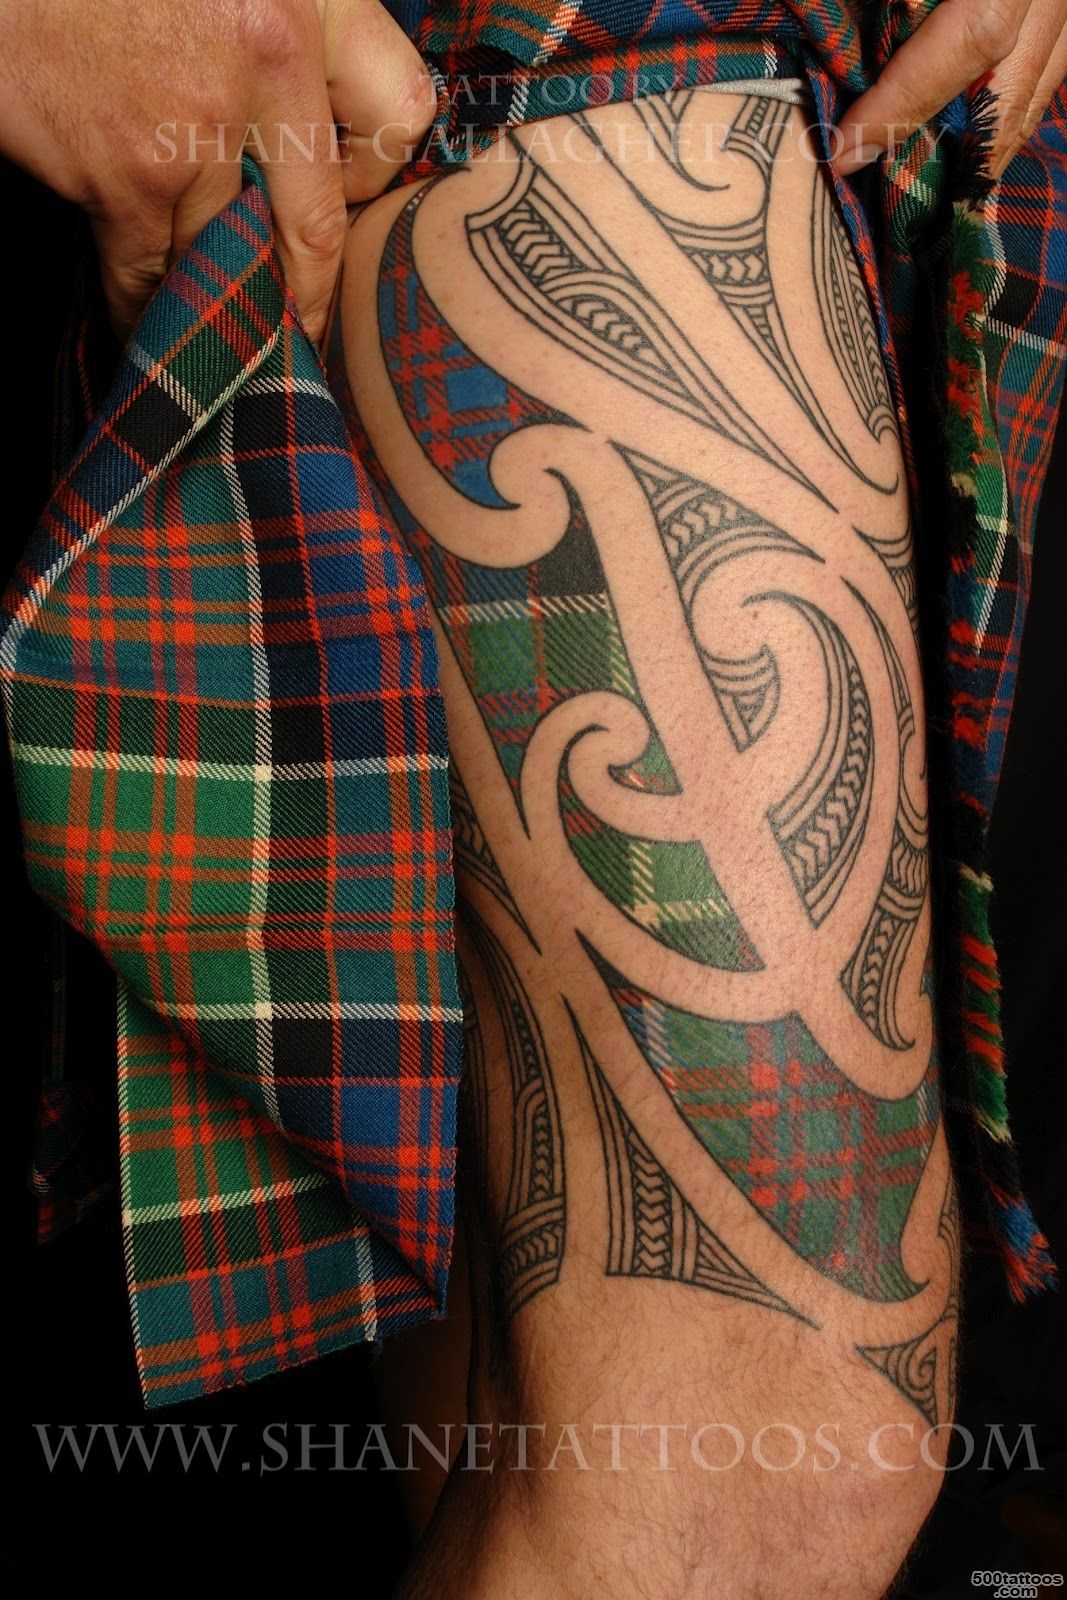 SHANE-TATTOOS-Puhoro-MaoriScottish-on-William_13.JPG